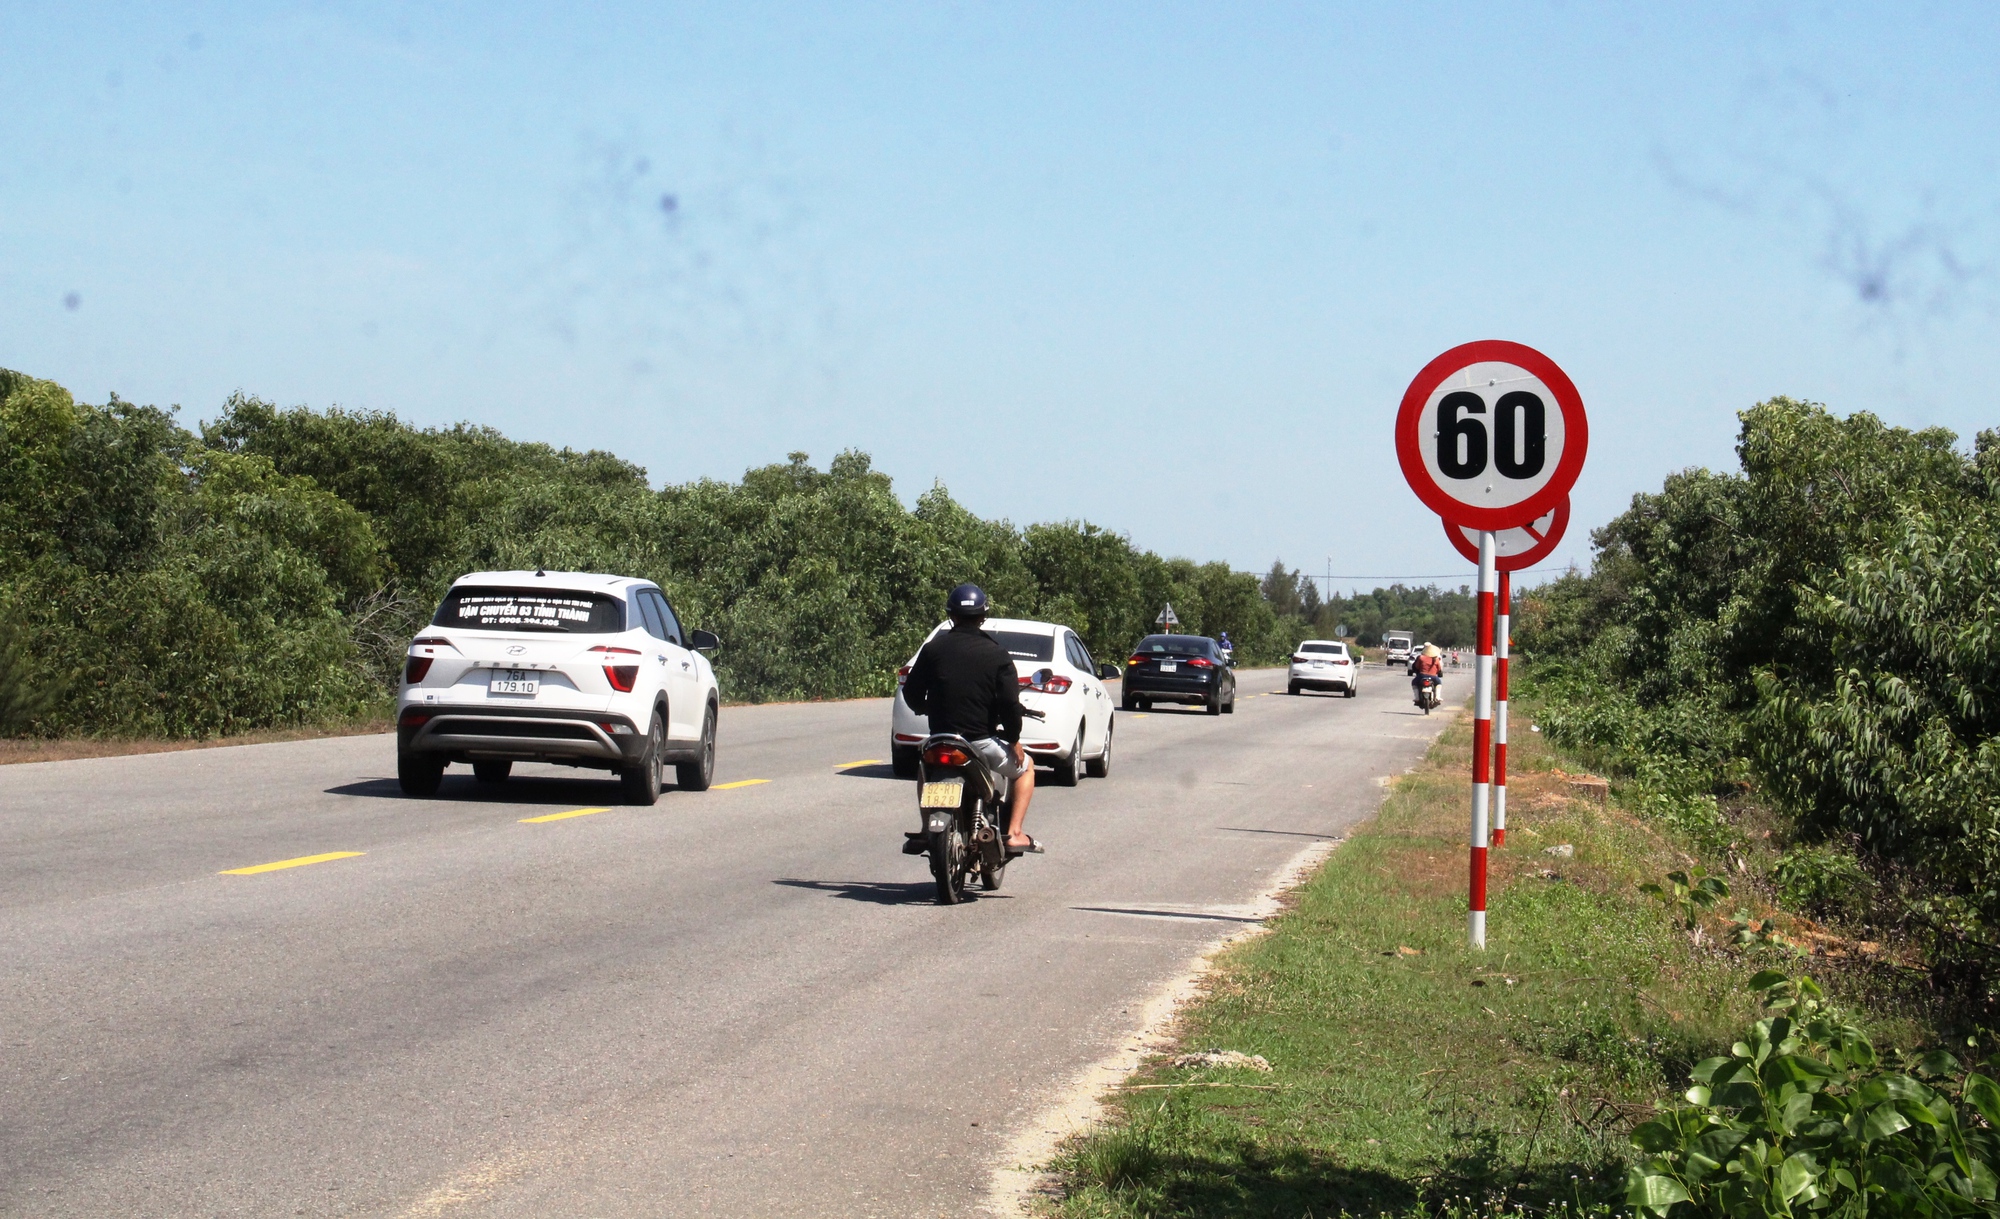 Vì sao gần 30 km trên tuyến đường 'cao tốc ven biển' chỉ cho phép 60 km/giờ? - Ảnh 2.